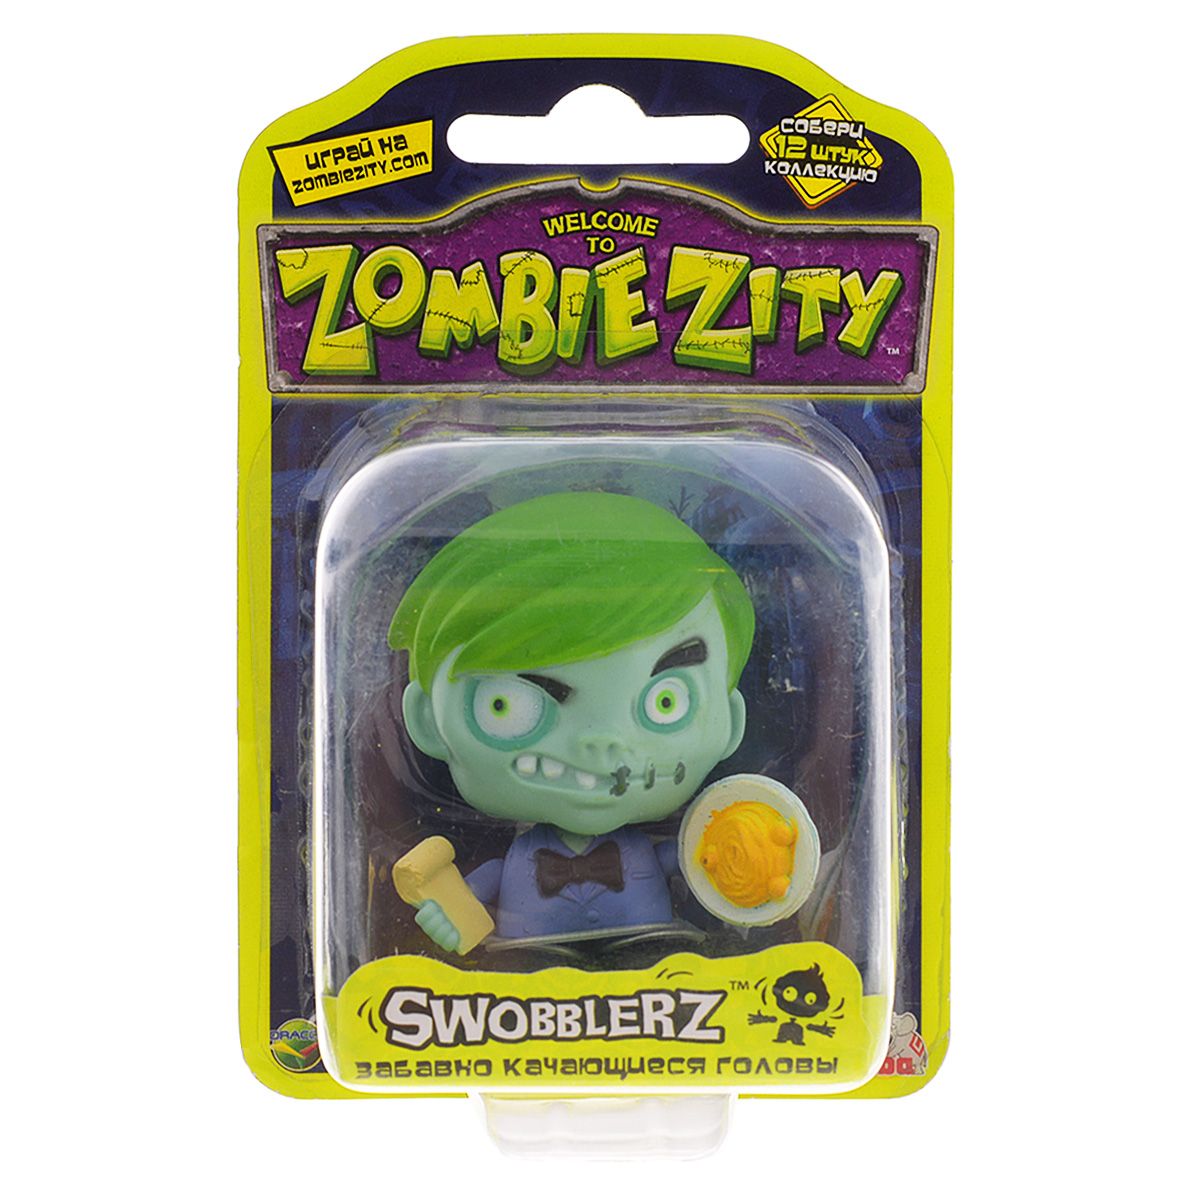 Фигурки Зомби Smoby Zombie Zity 6 см, в ассортименте zal